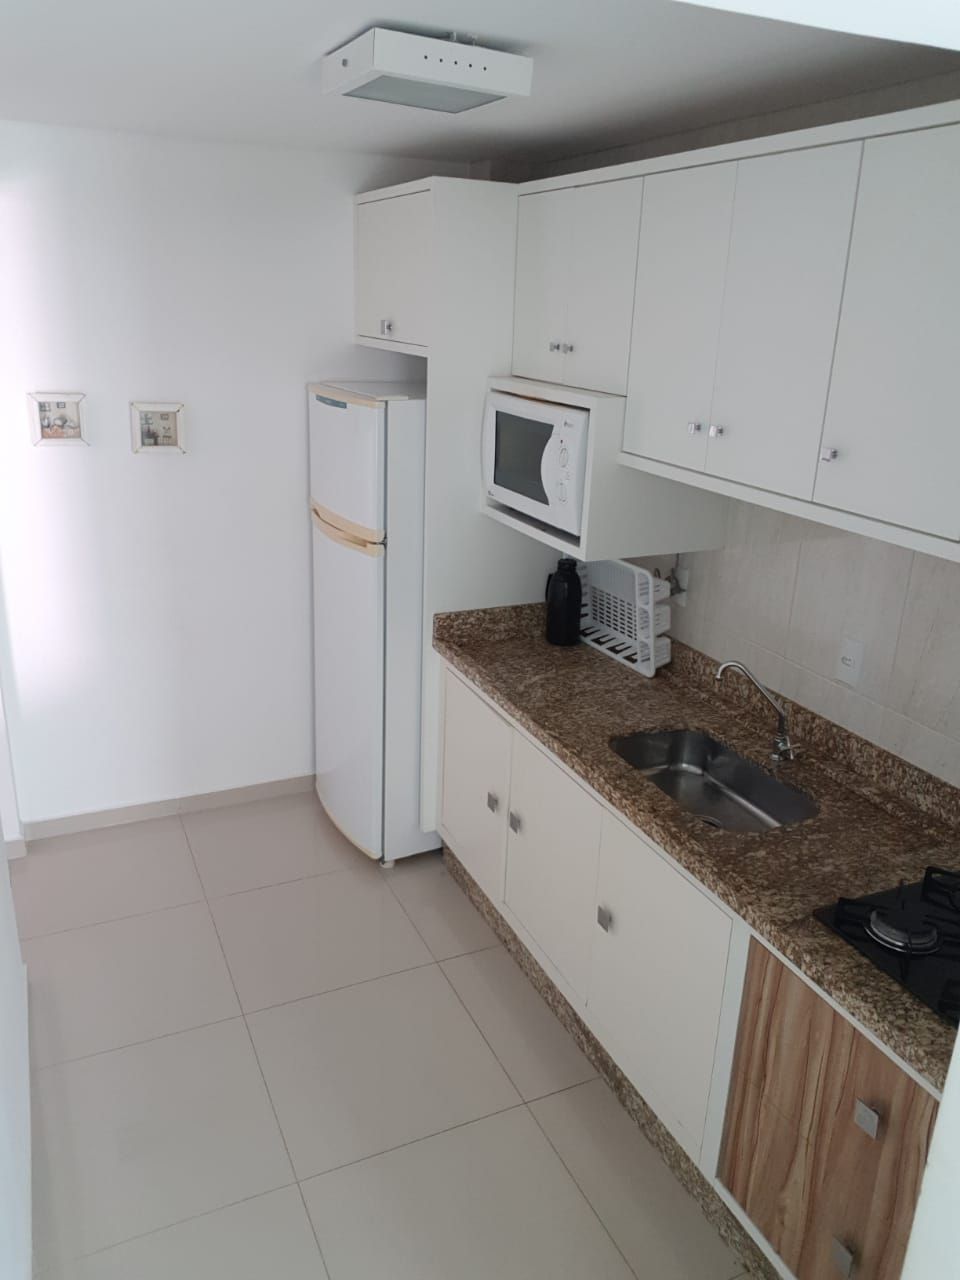 Apartamento com 2 Dormitórios para alugar, 70 m² por R$ 180,00